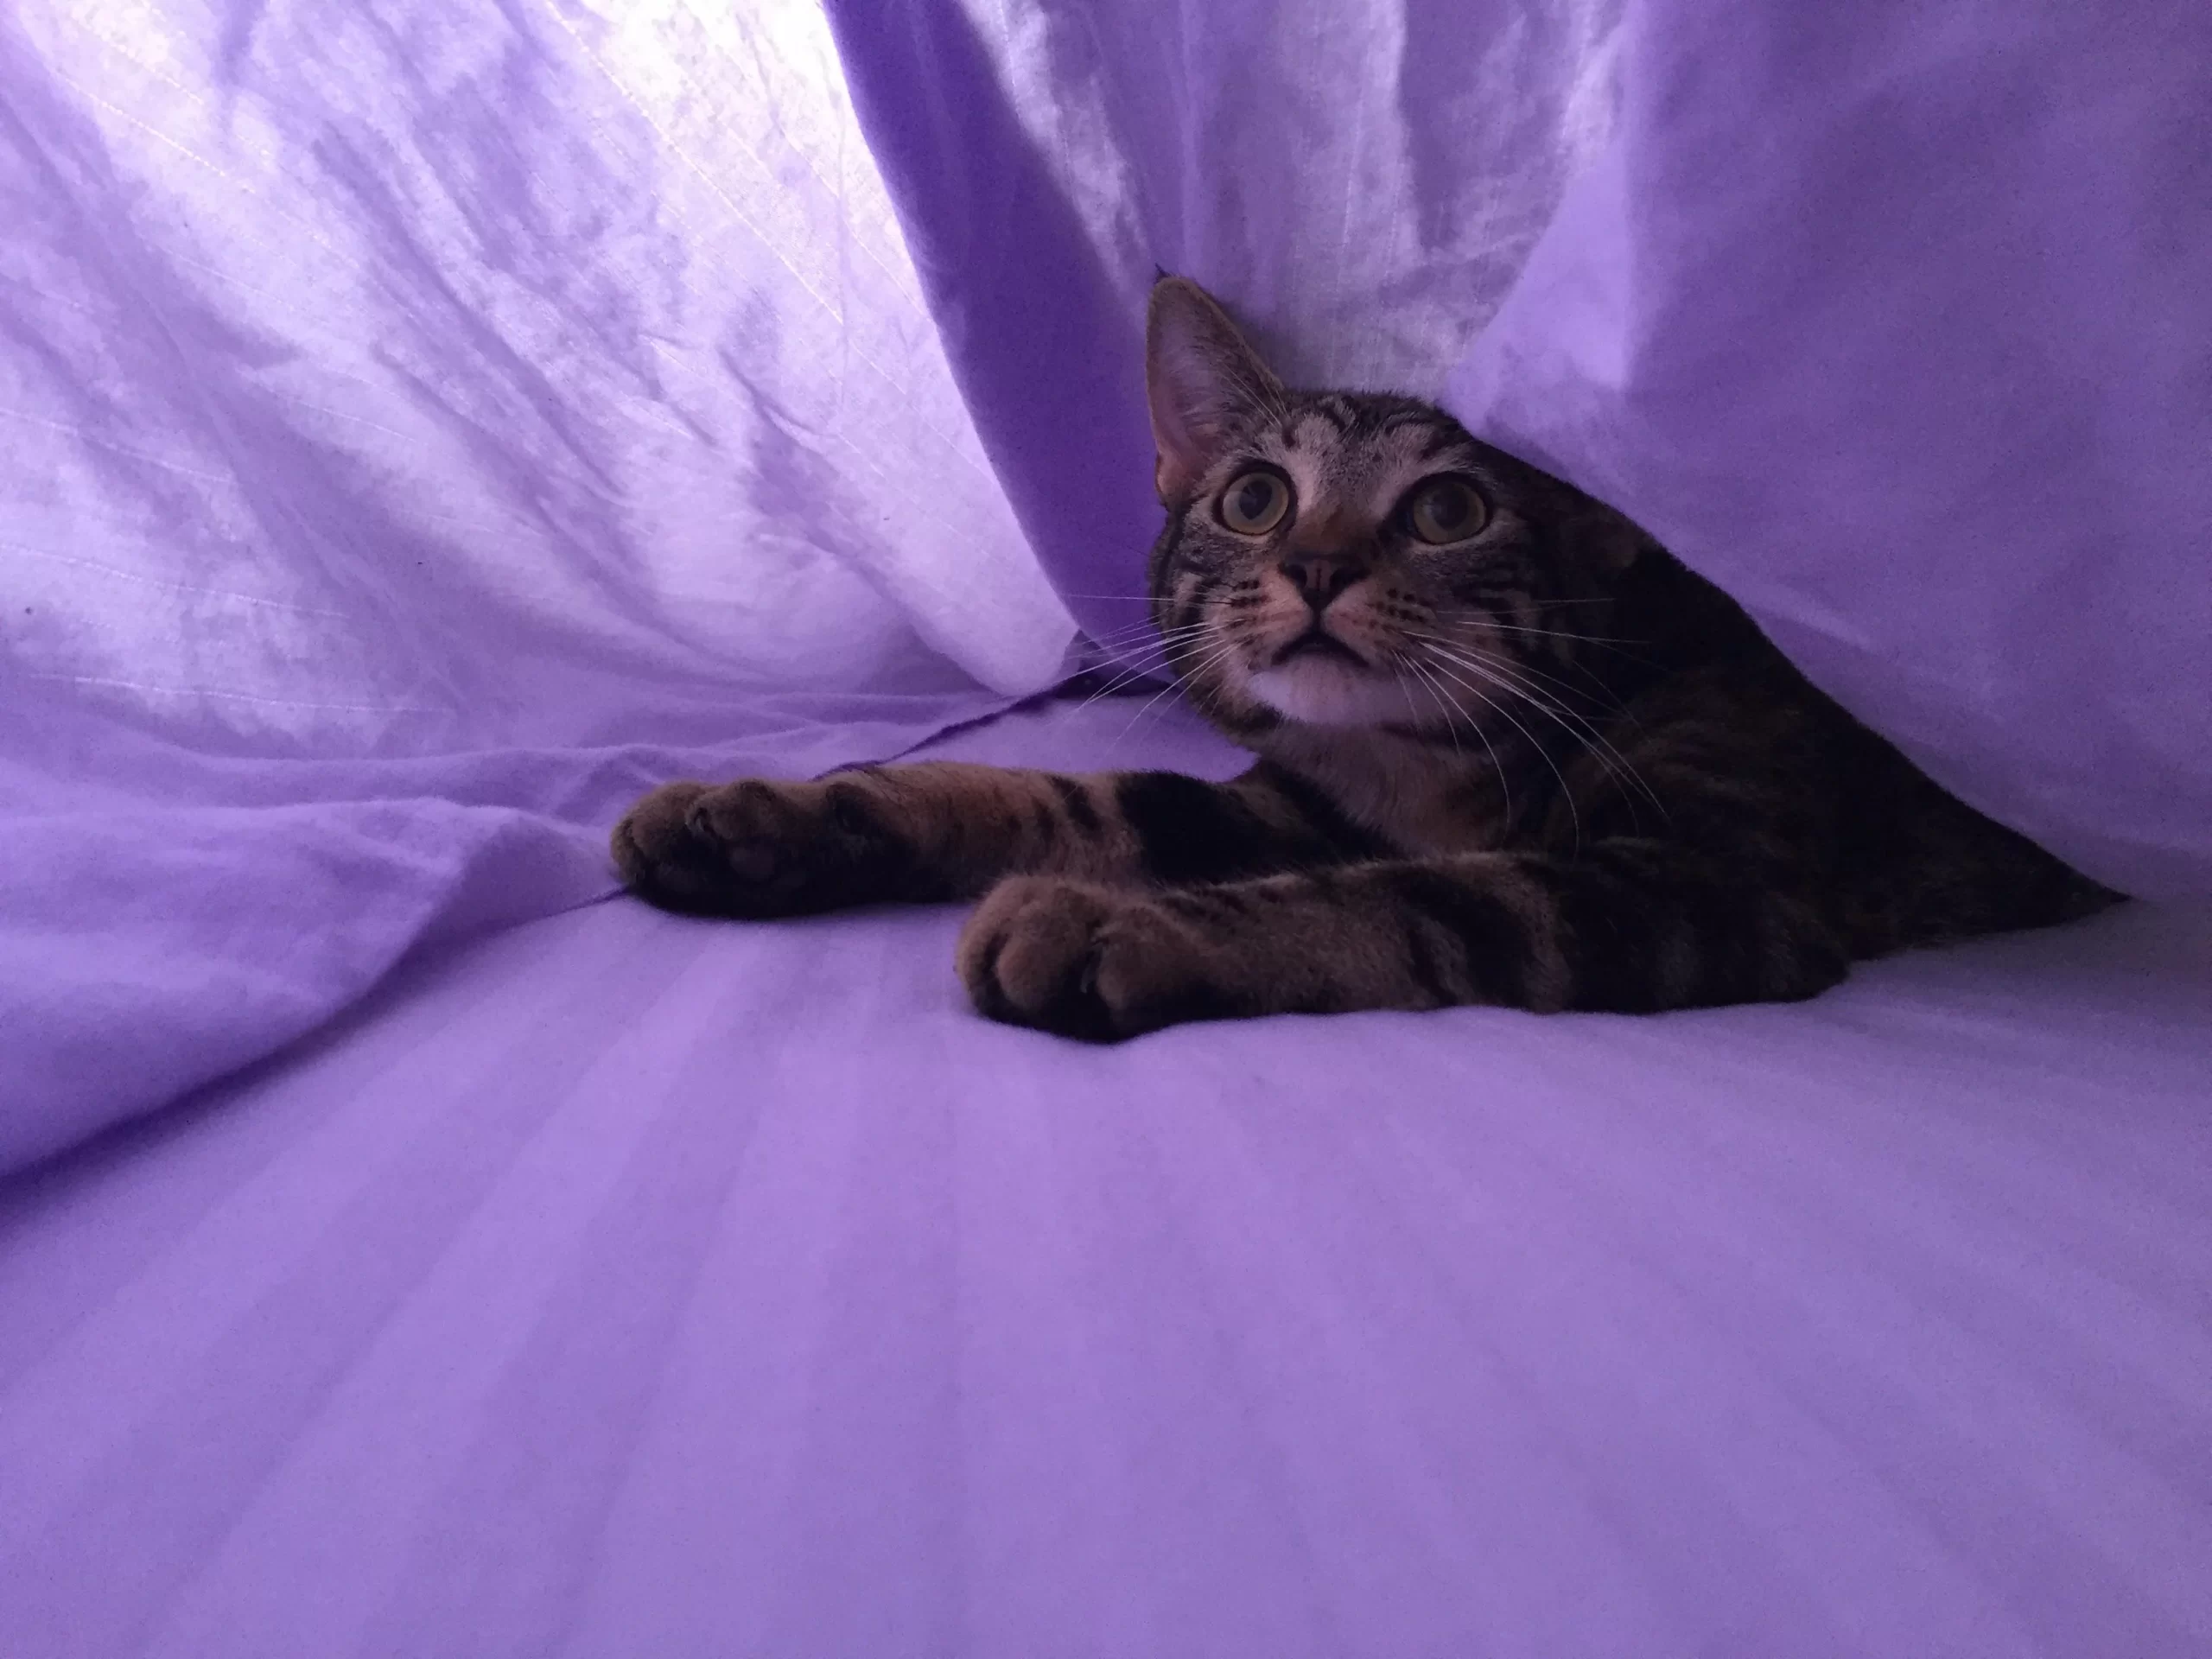 Cat burrowing under blanket